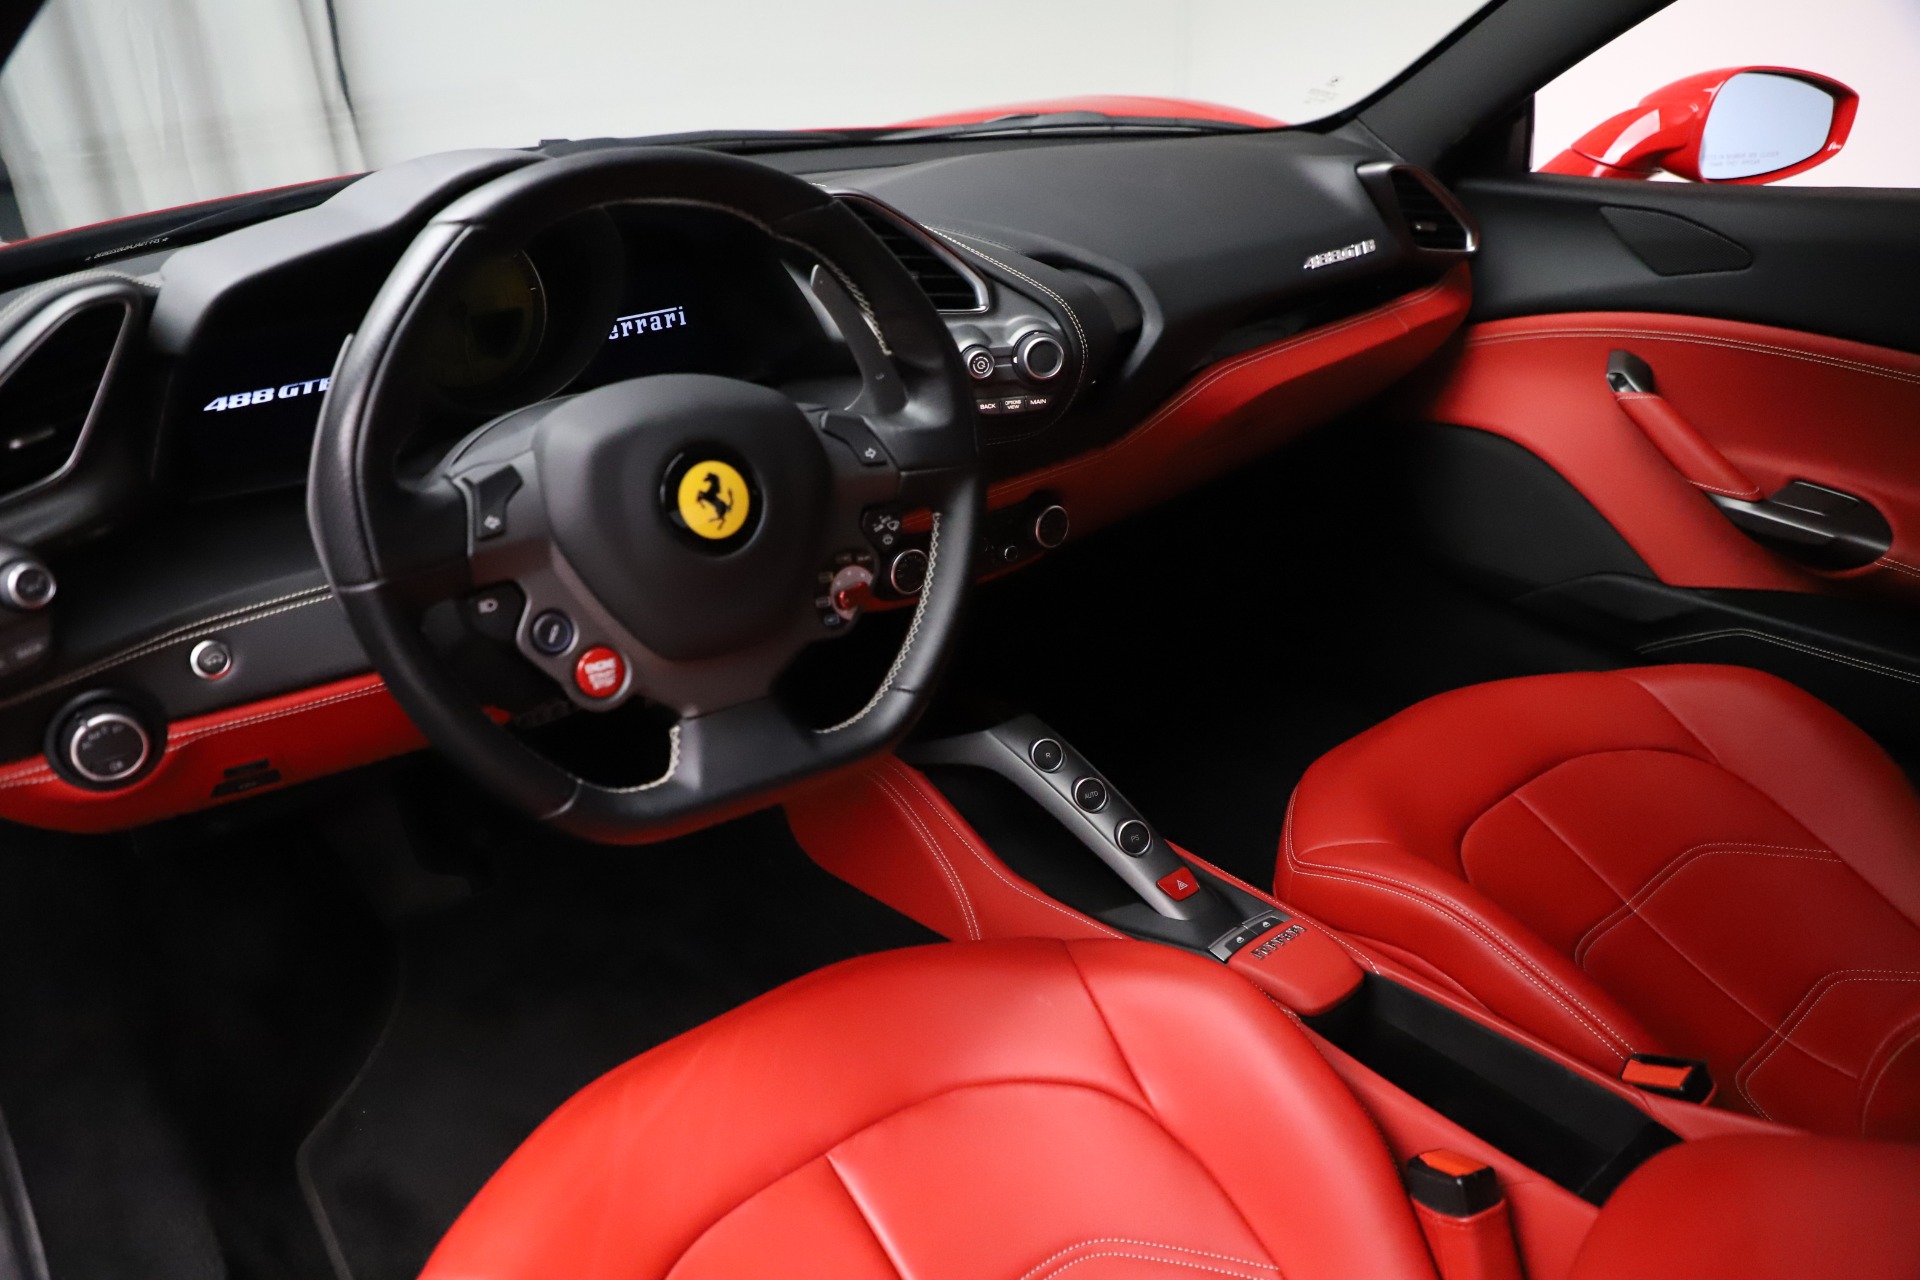 Ferrari 488 GTB Interior & Exterior Images - 488 GTB Pictures